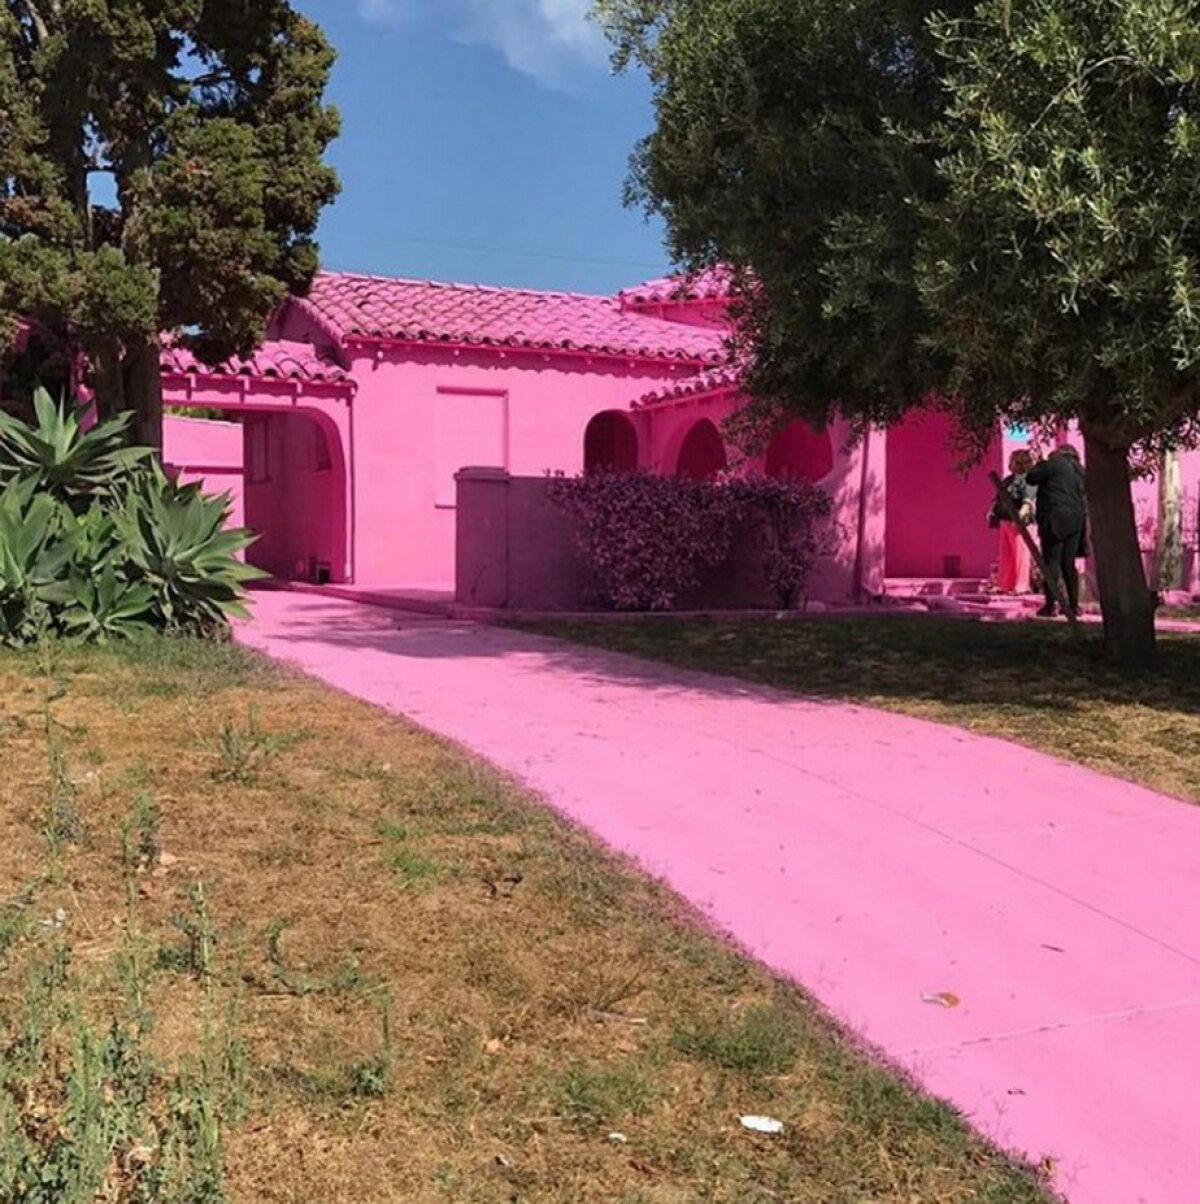 FOTO & VIDEO A vopsit mai multe case în roz şi a stârnit controverse în Los Angeles